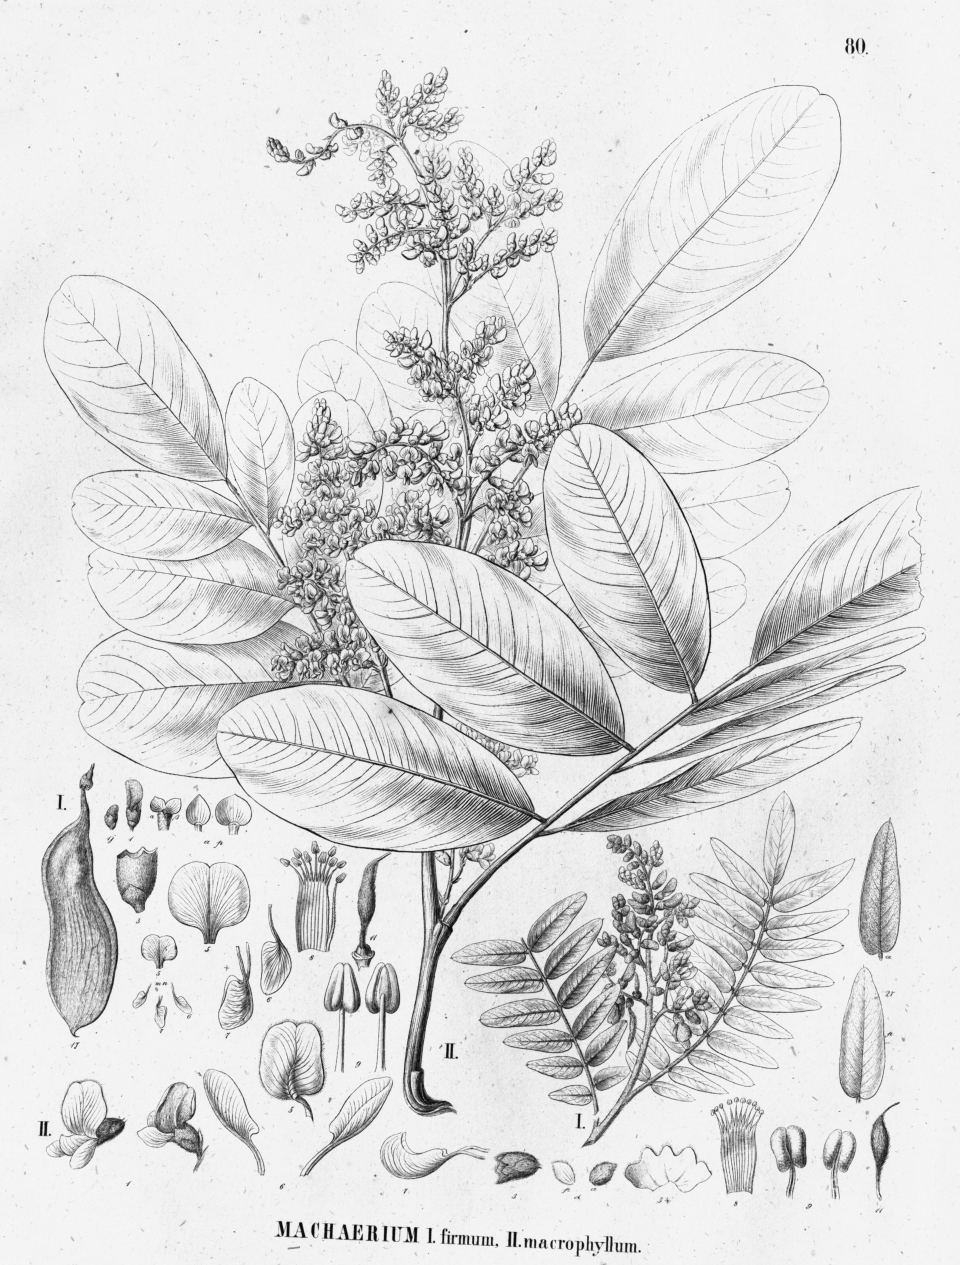 Machaerium macrophyllum